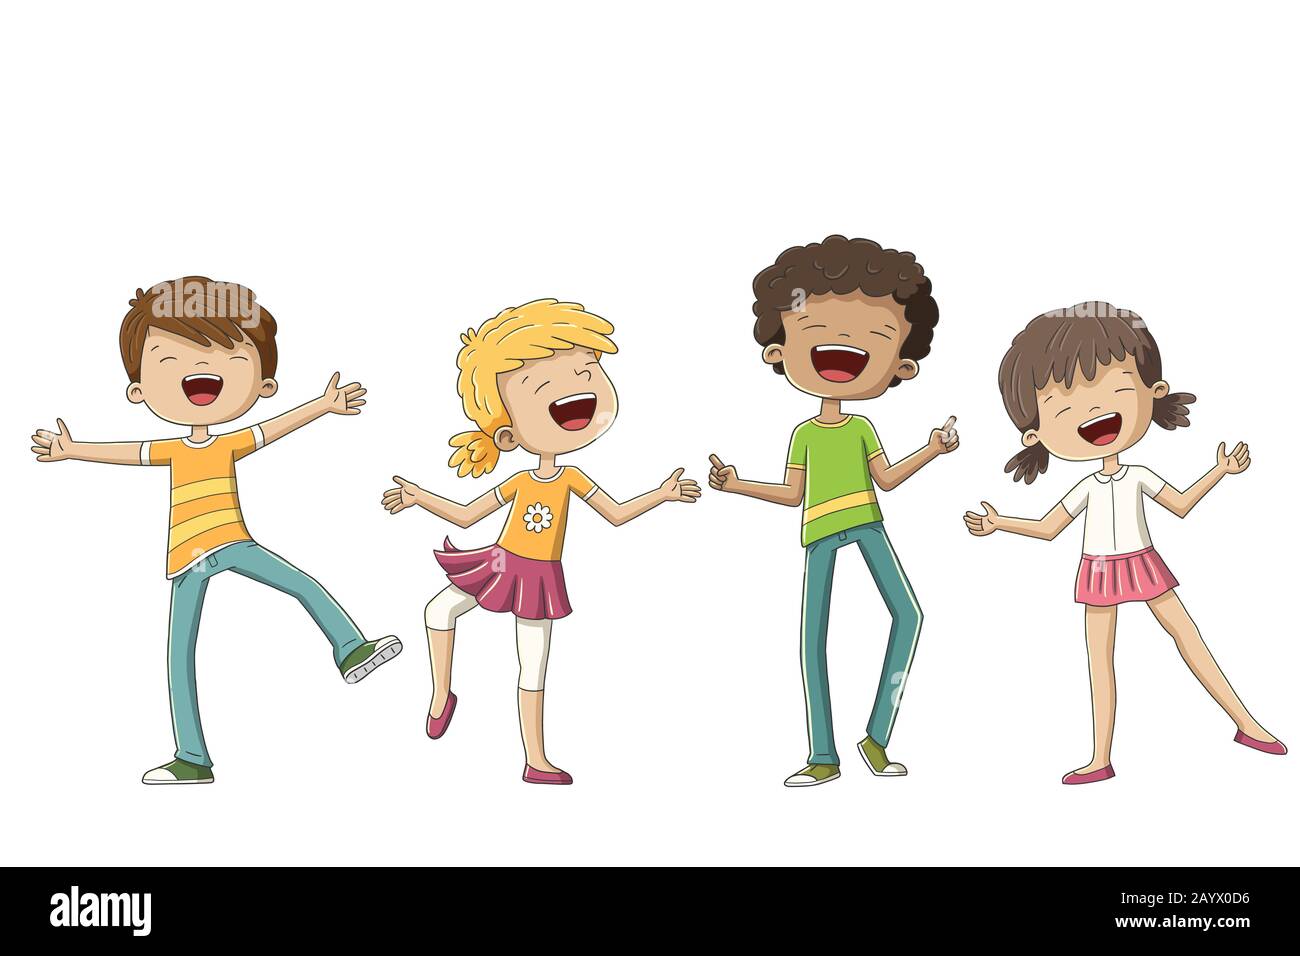 Vier glückliche Kinder. Vektorgrafiken mit separaten Ebenen von Hand zeichnen. Stock Vektor